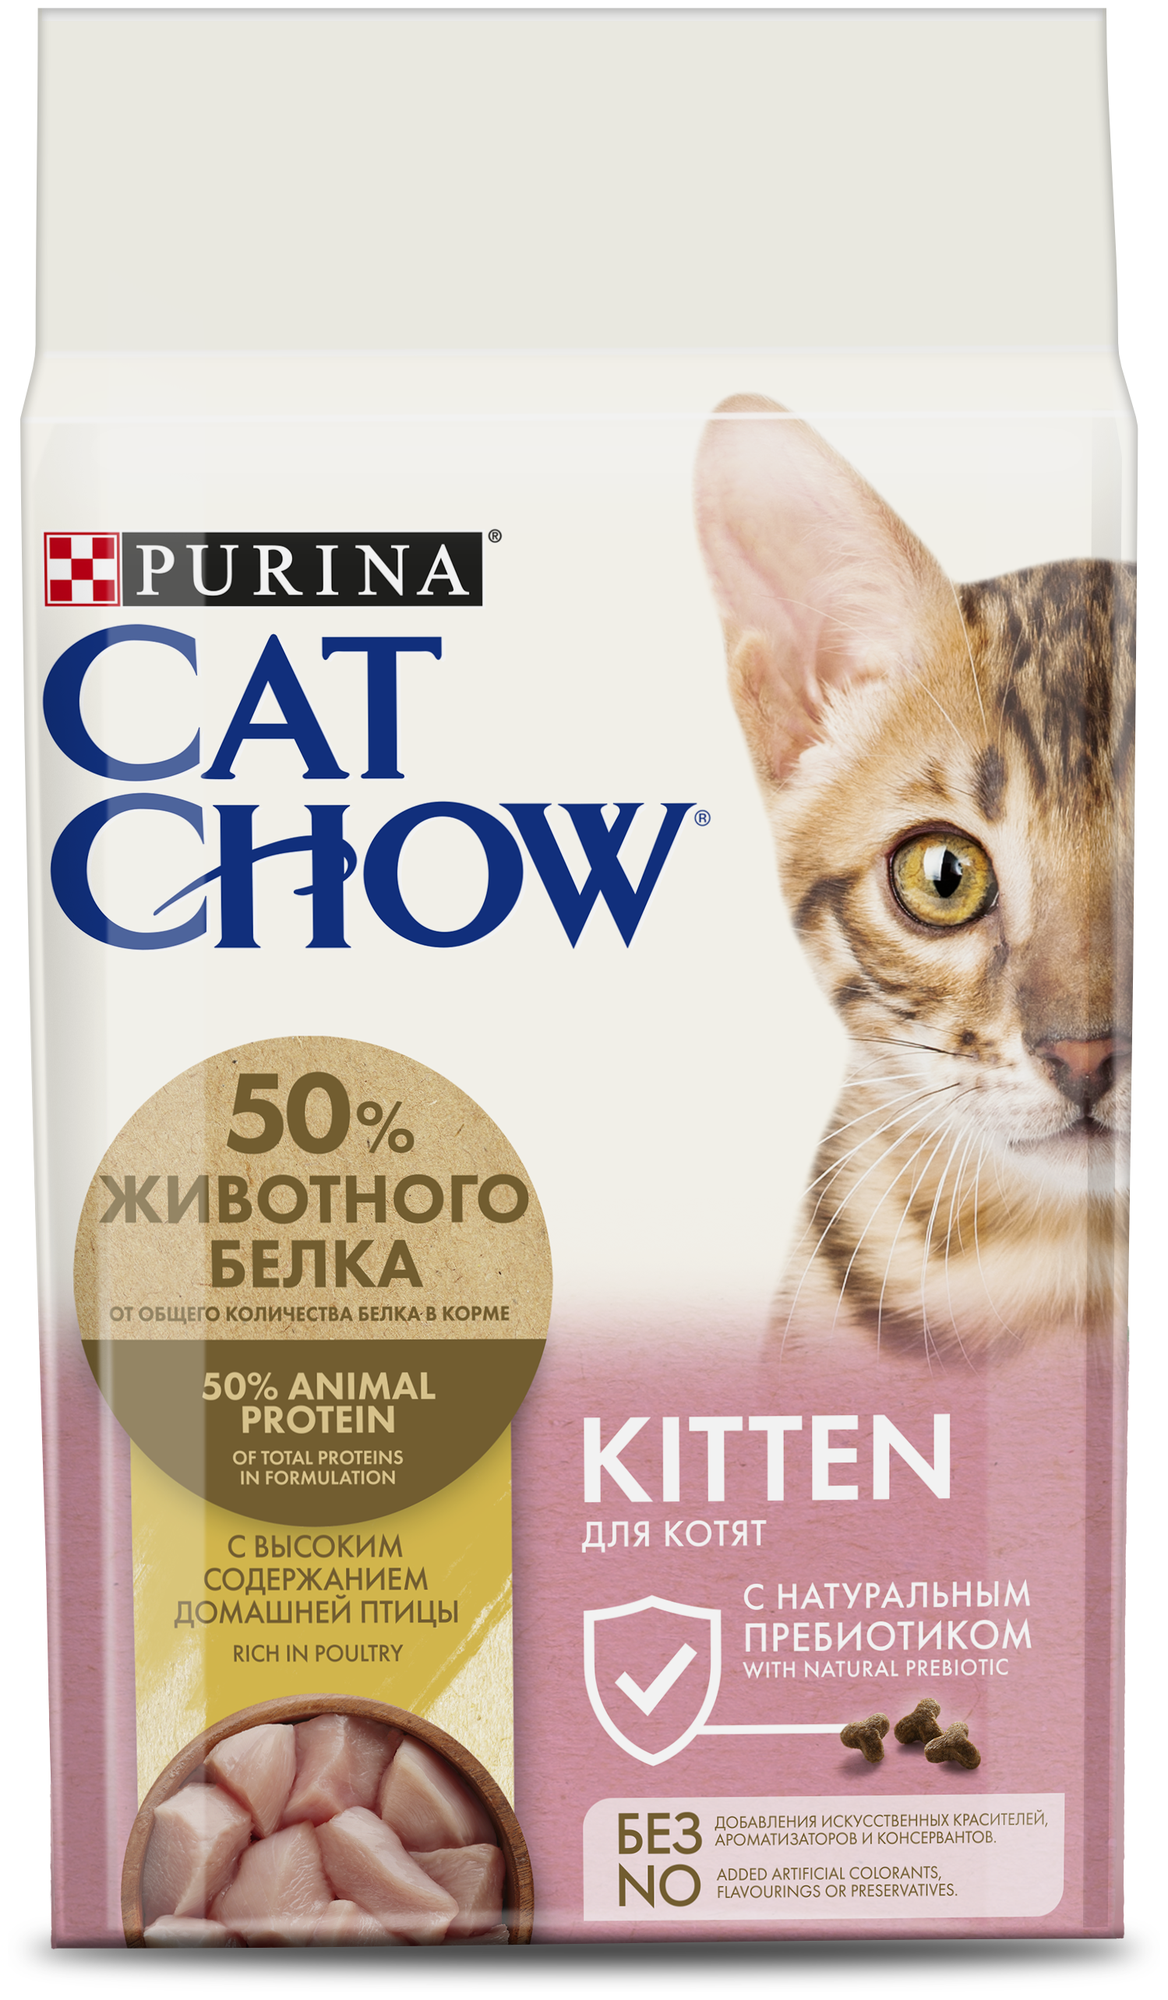 Cat Chow Сухой корм для котят, с высоким содержанием домашней птицы, 1.5кг